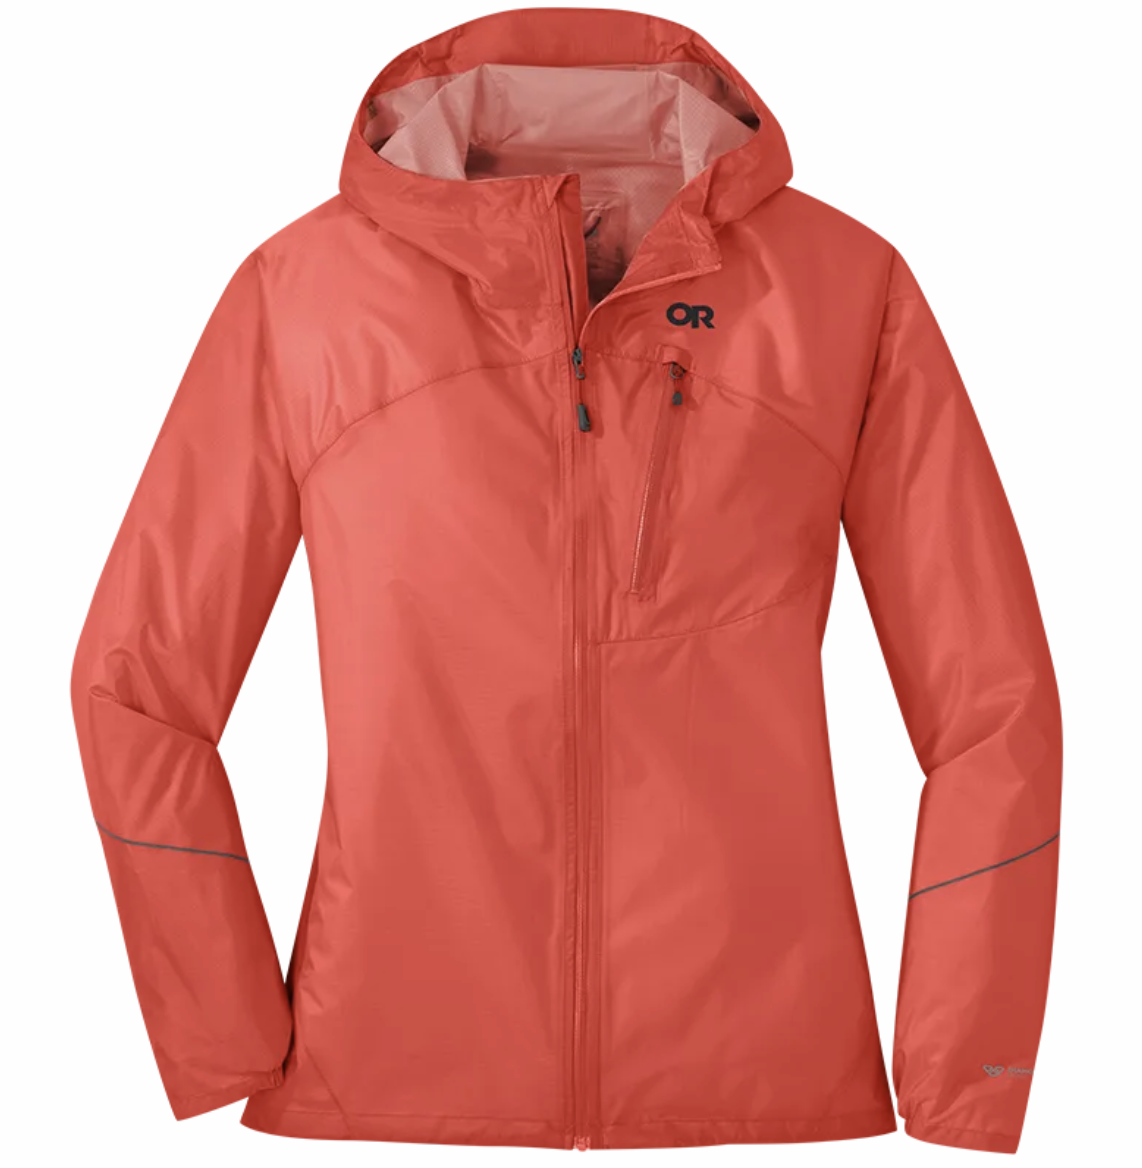 Avalanche Women's Lightweight Ripstop Rain Jacket With Zipper Pockets